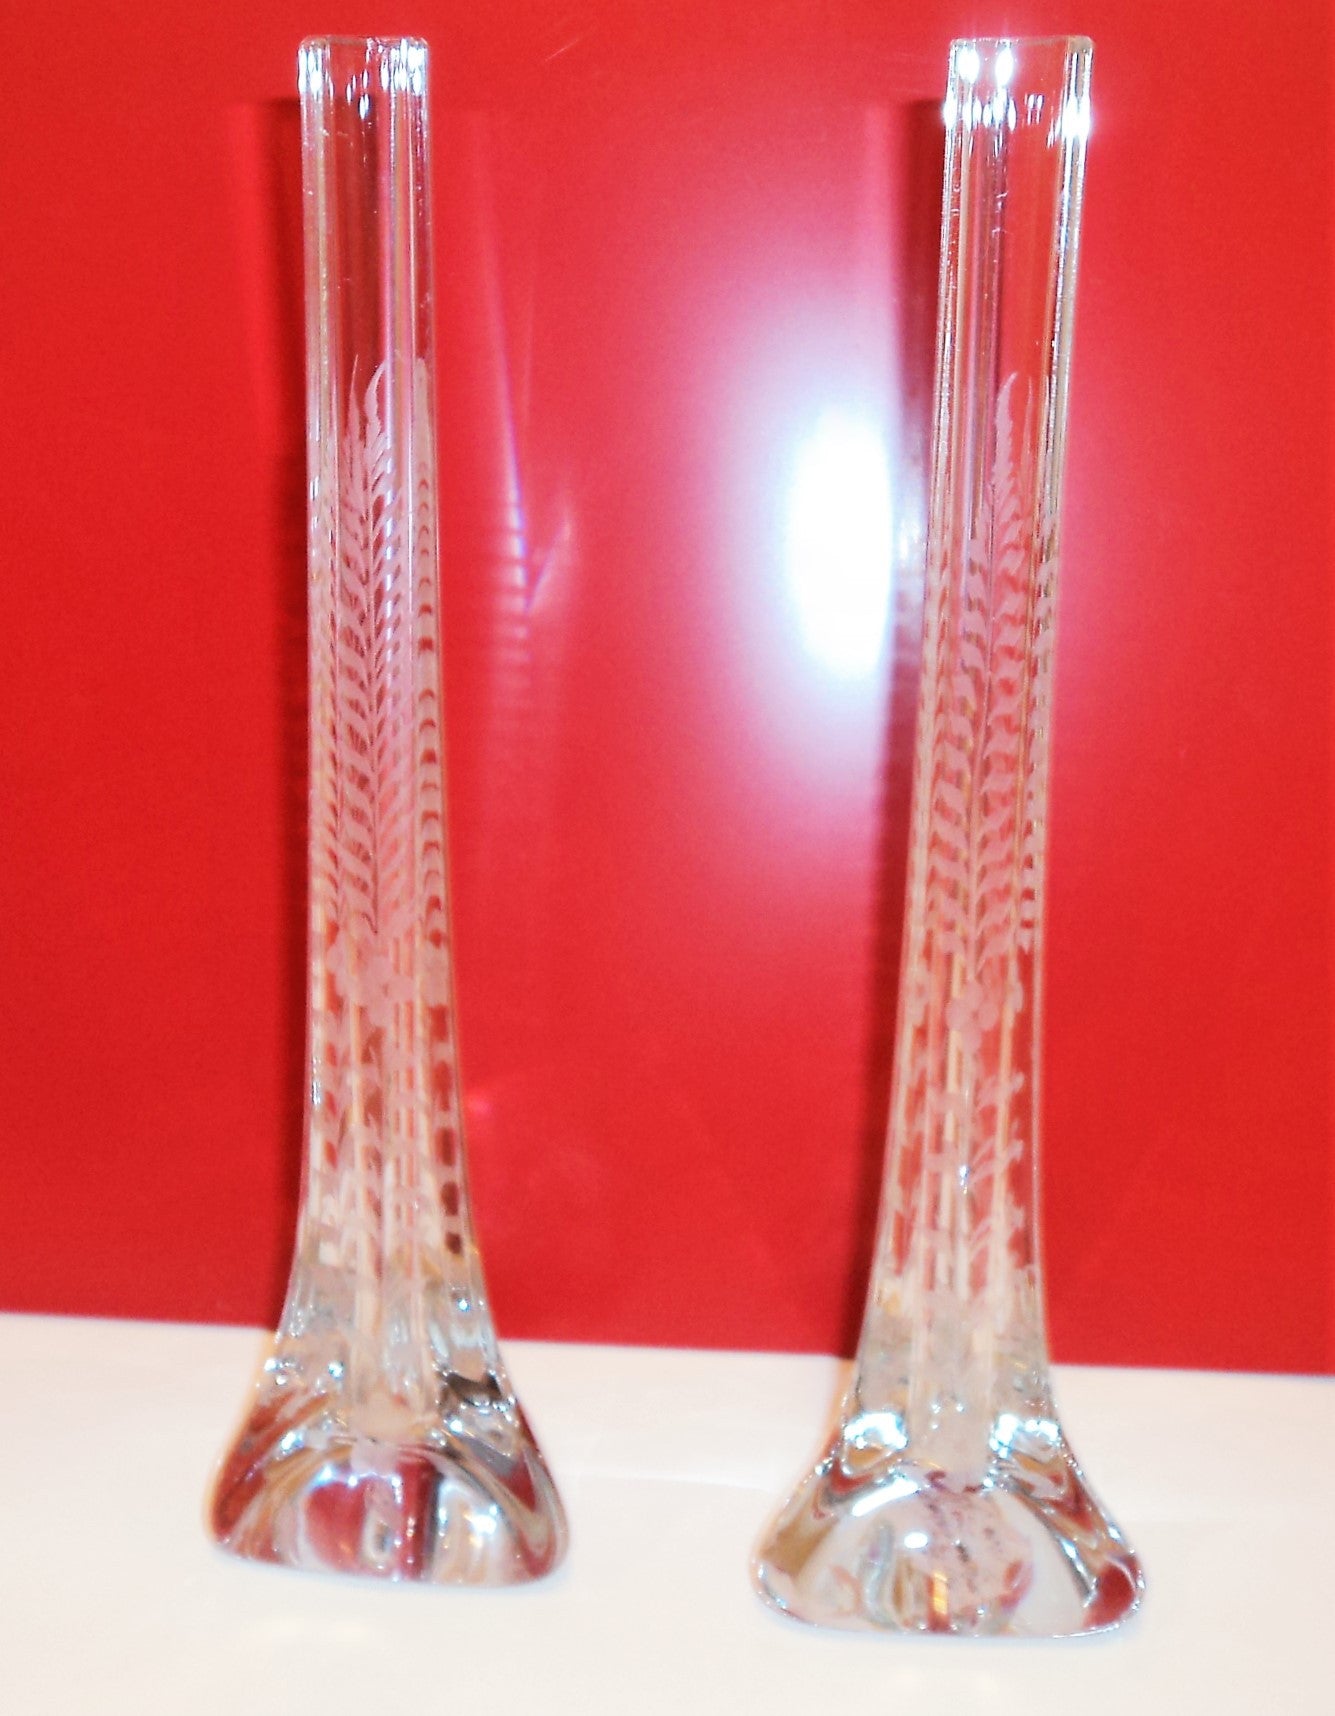 T.J. Hawkes Etched Crystal Bud Vase Pair